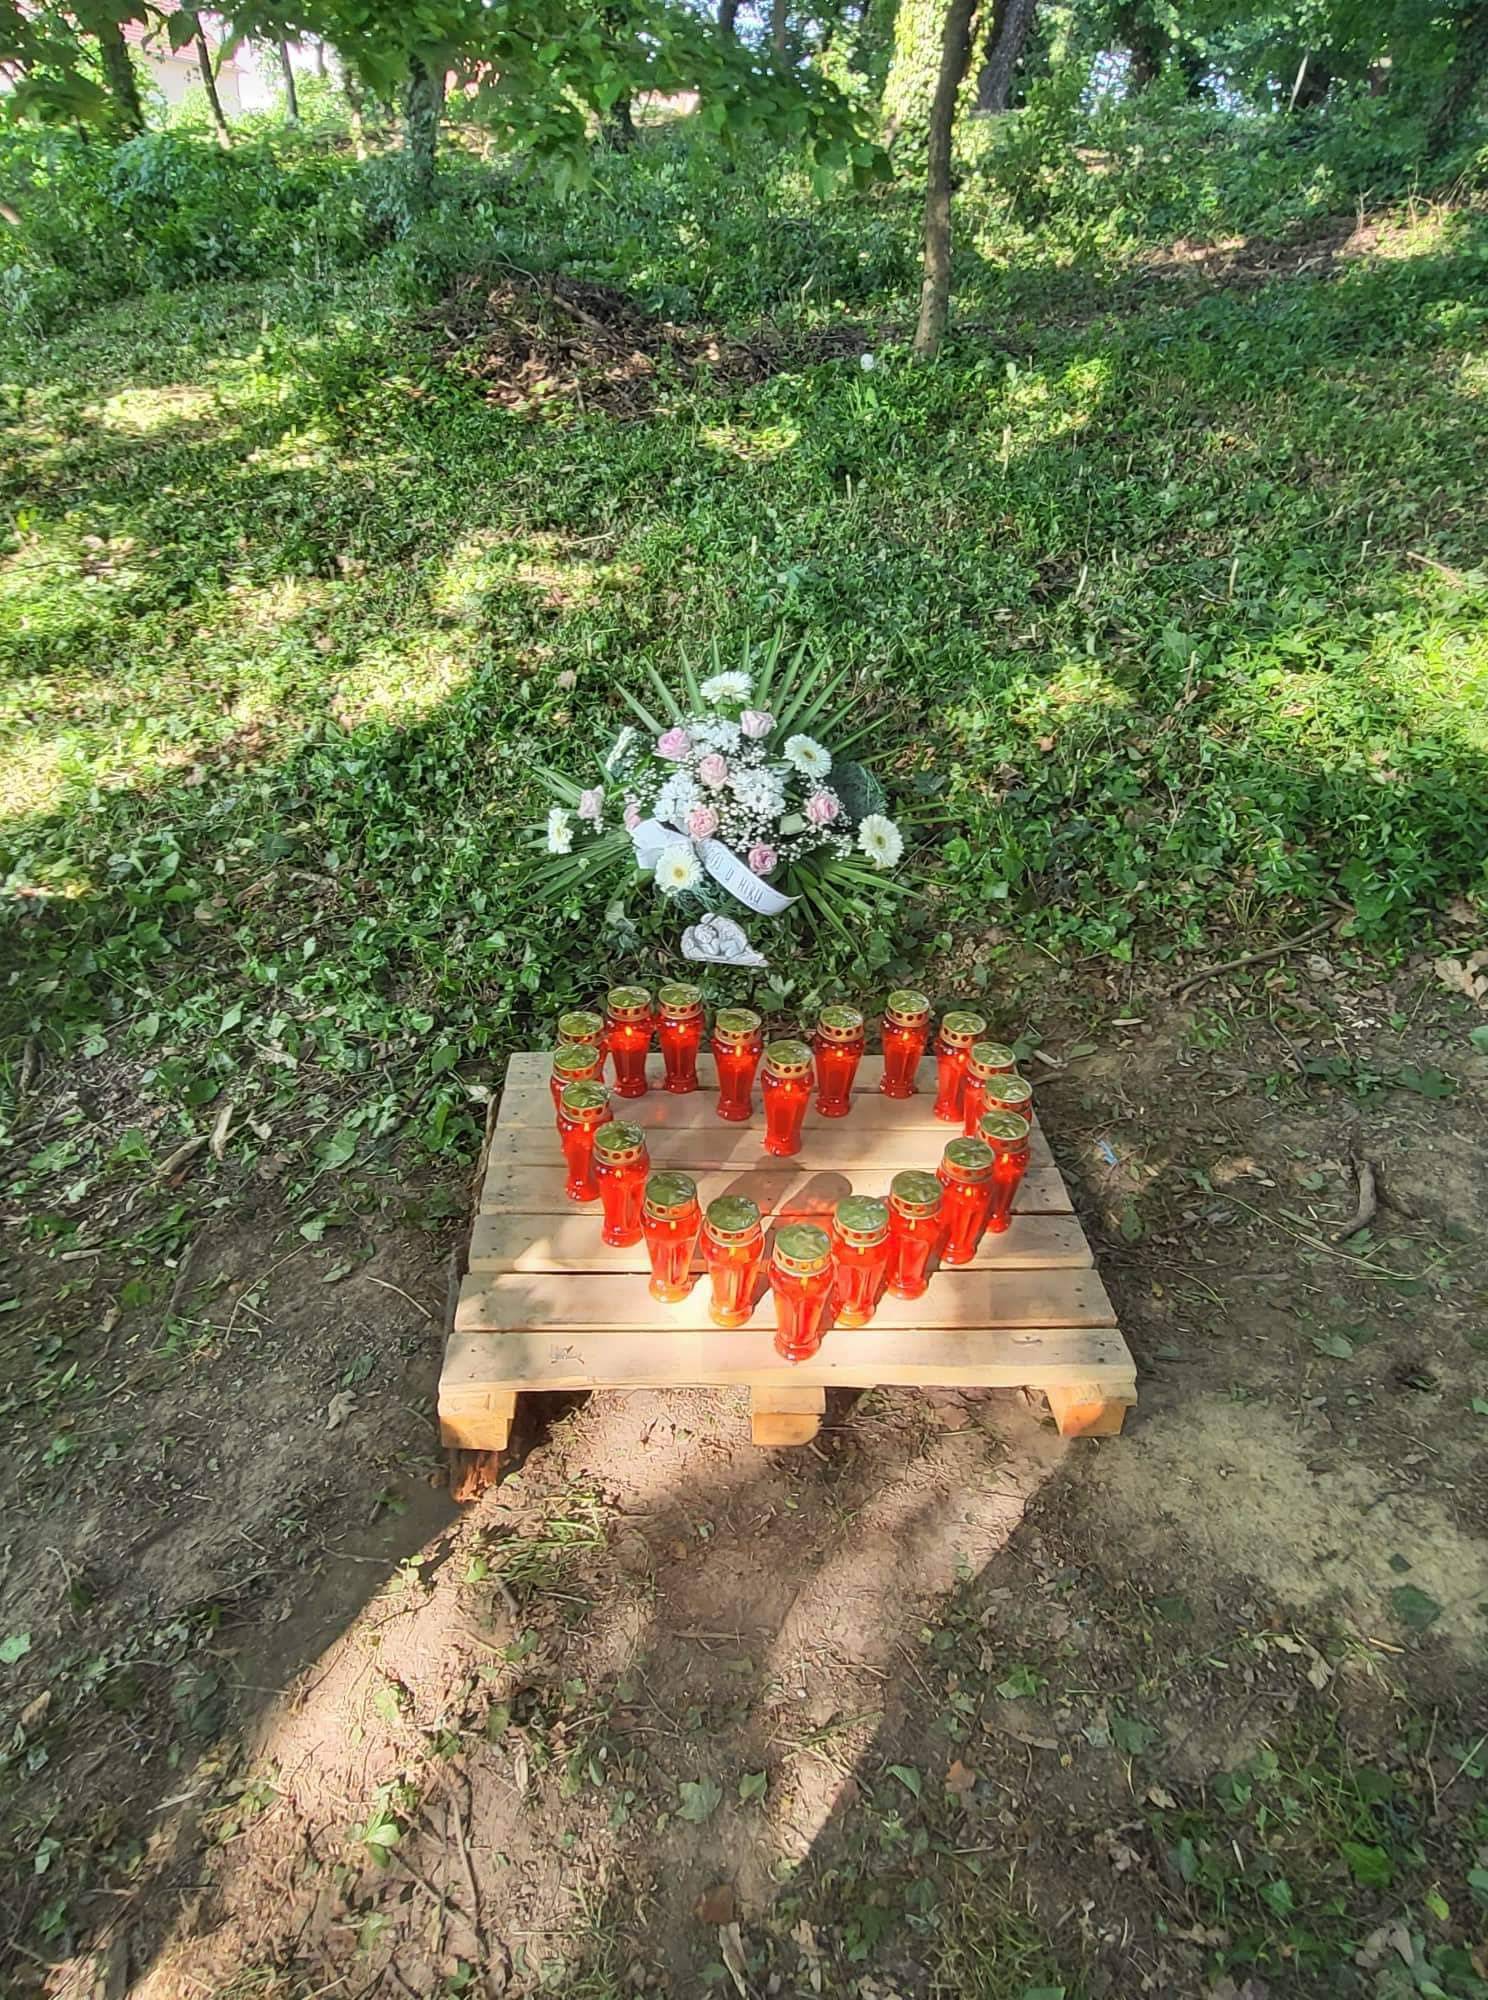 Jelenu (20) izbo u parku: Za brutalno ubojstvo u Našicama dobio je 27 godina zatvora